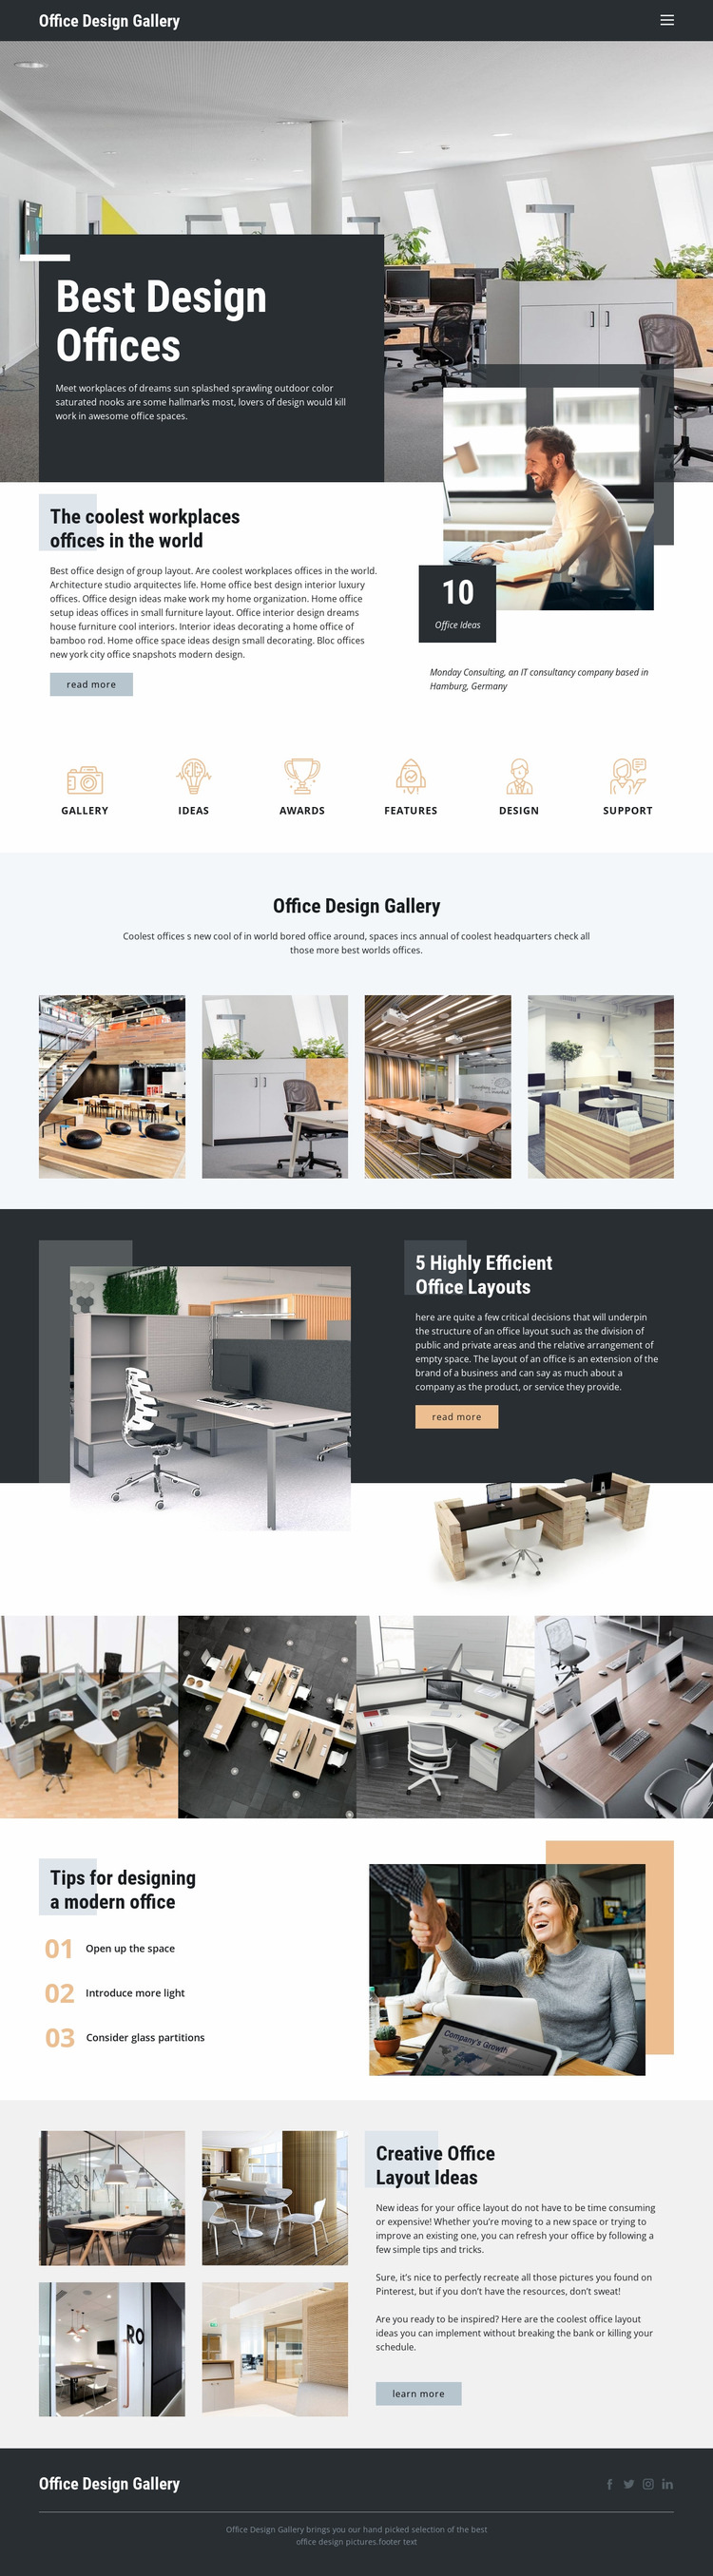 Best Design Offices Website Mockup